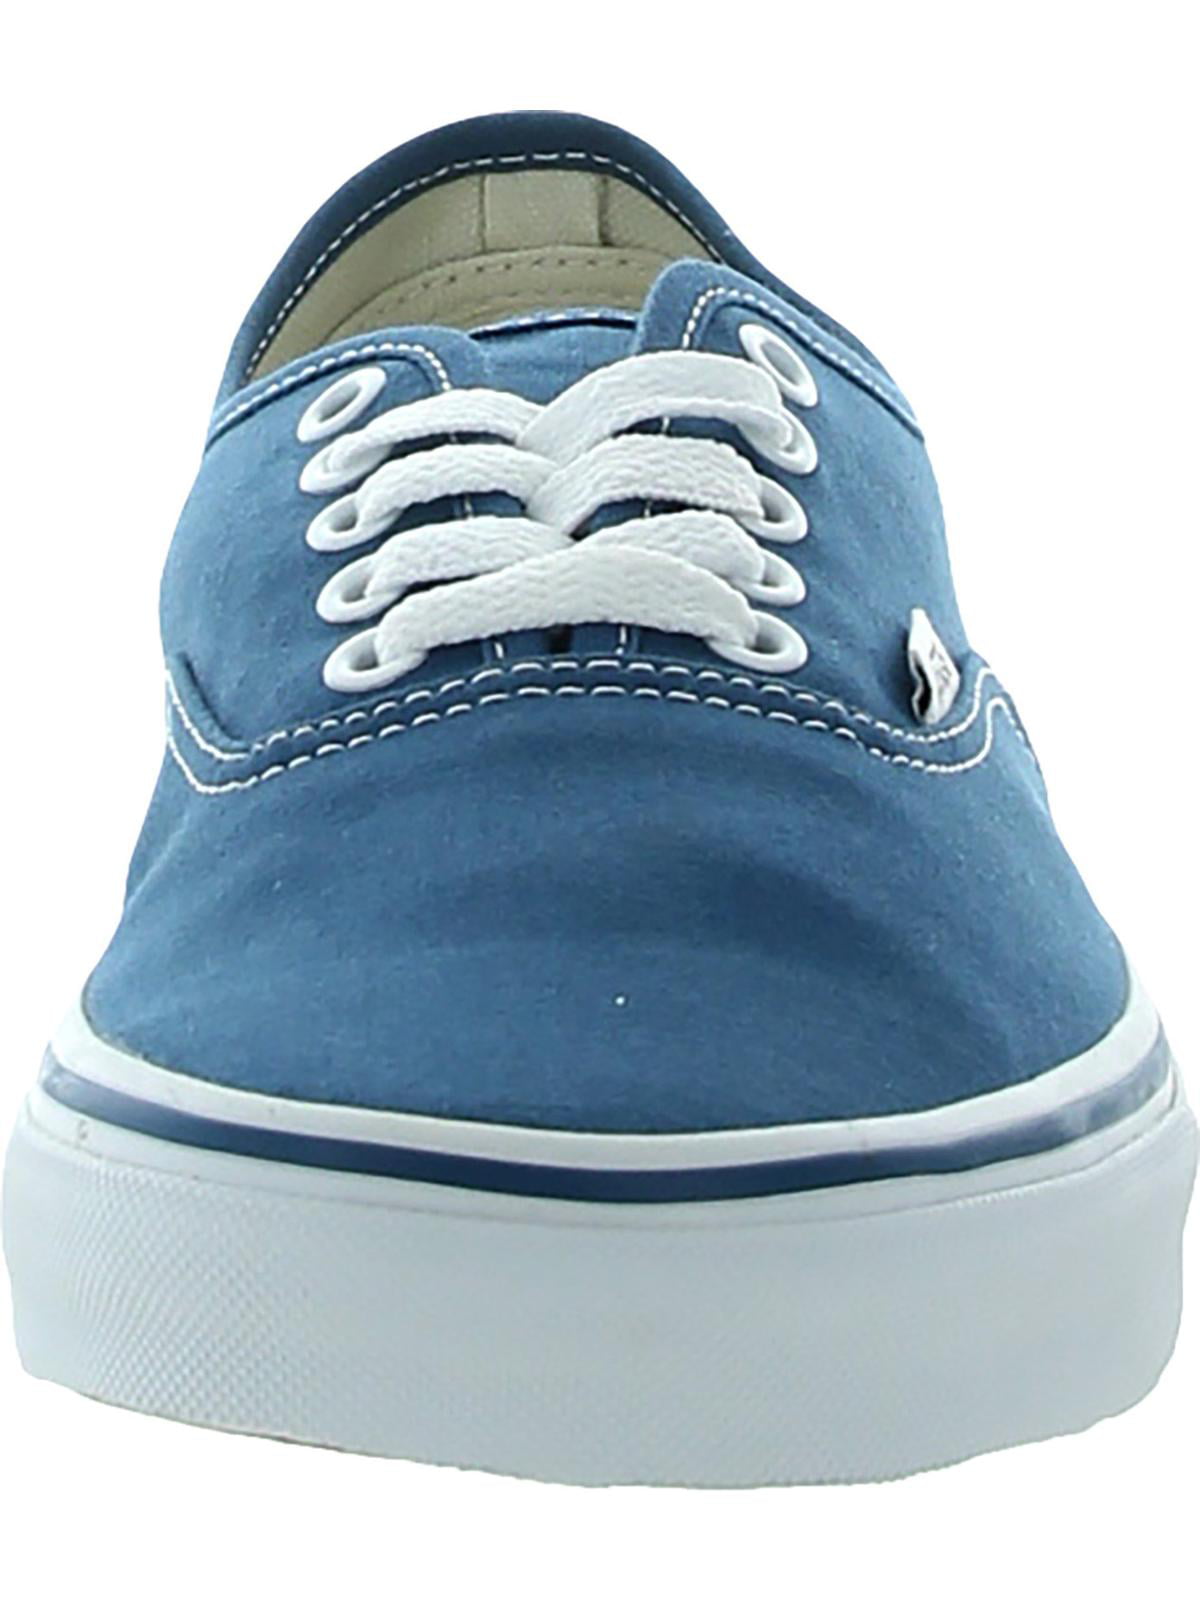 Vans Authentic Unisex Canvas Lace Up Top Original Sneakers Blue Size 11.5 - Walmart.com